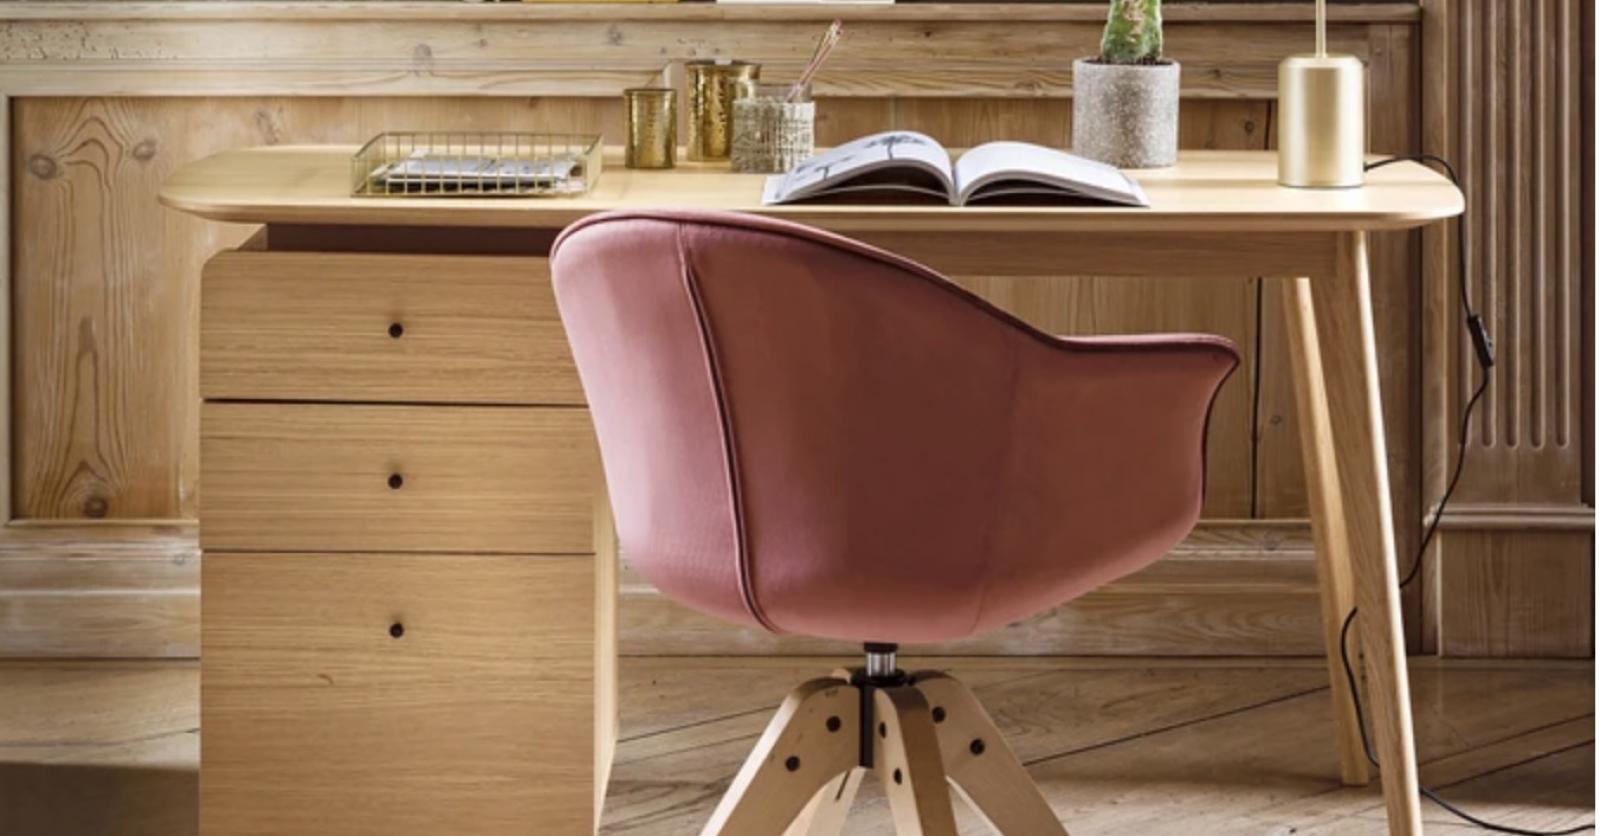 Chaise orthopédique de bureau en bois confortable siège